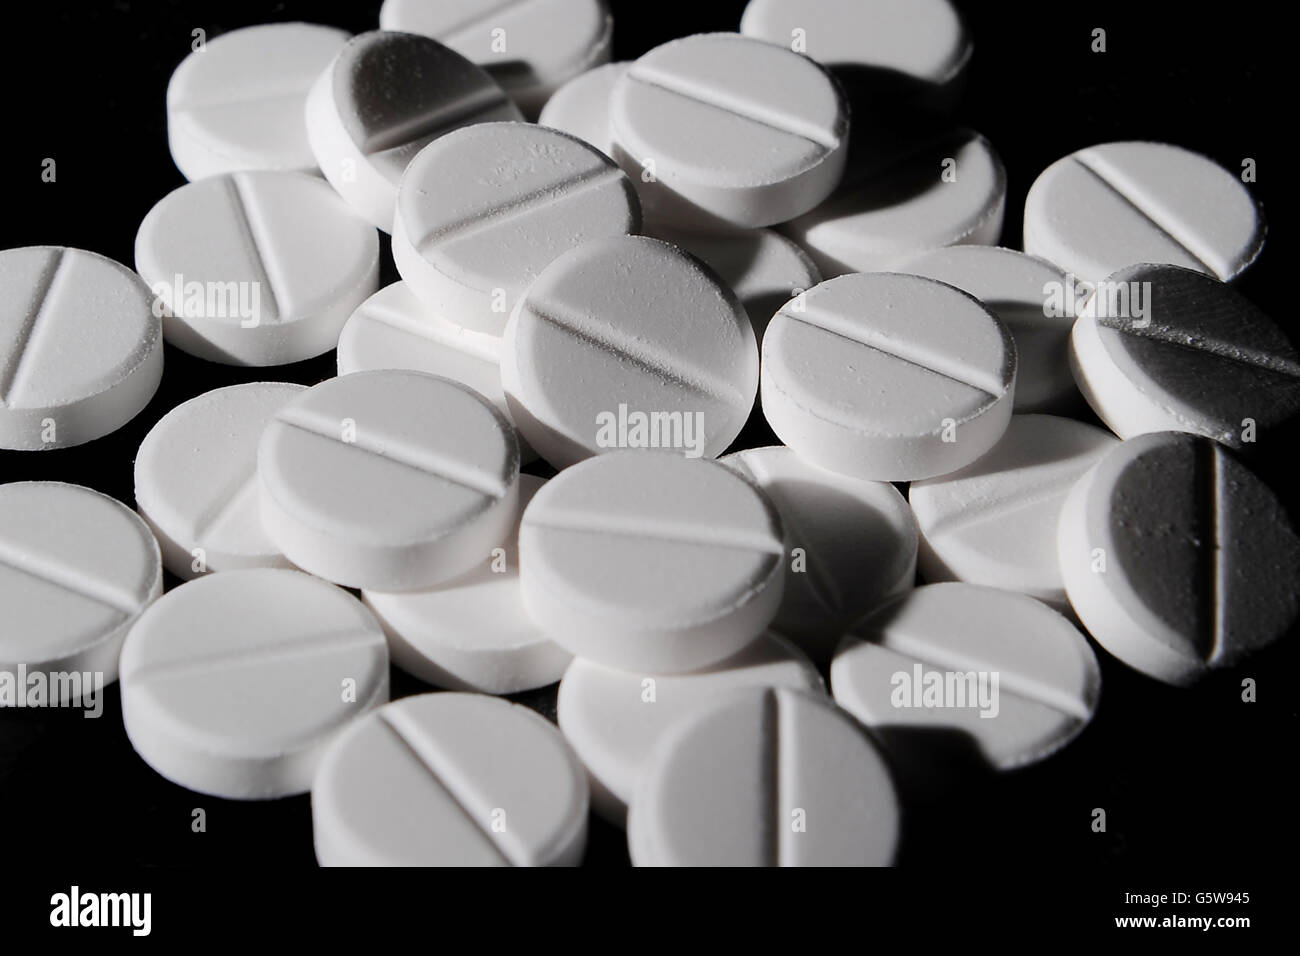 Paracetamol Change Reduces Deaths G5W945 